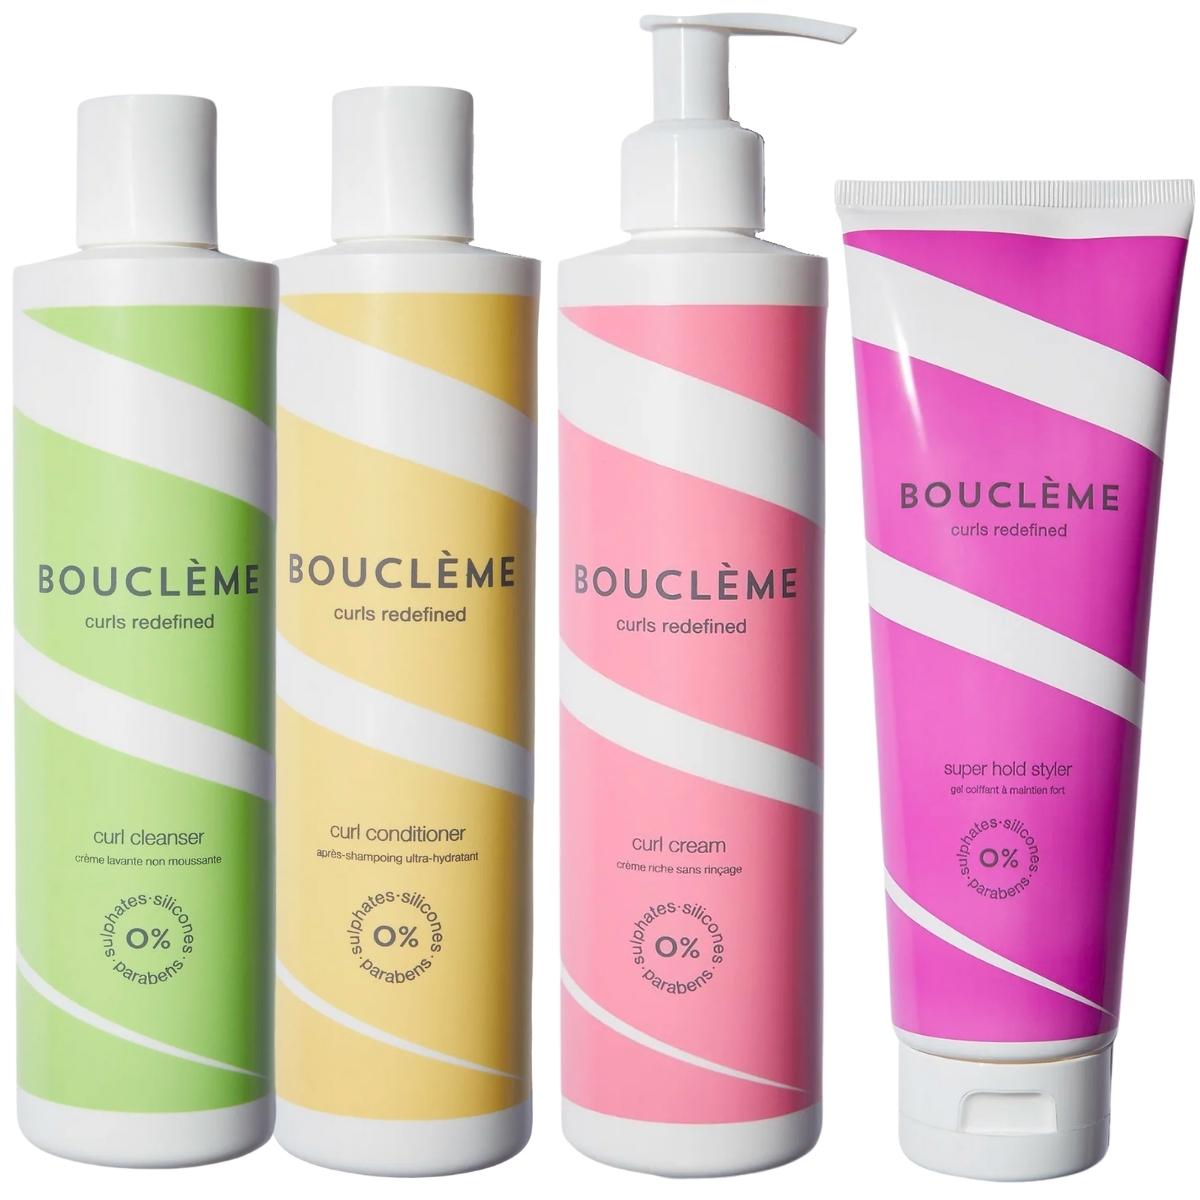 La routine Bouclème idéale pour les cheveux plutôt épais. C'est une base de 4 produits : Curl Cleanser, Curl Conditioner, Curl Cream et Super Hold Styler.